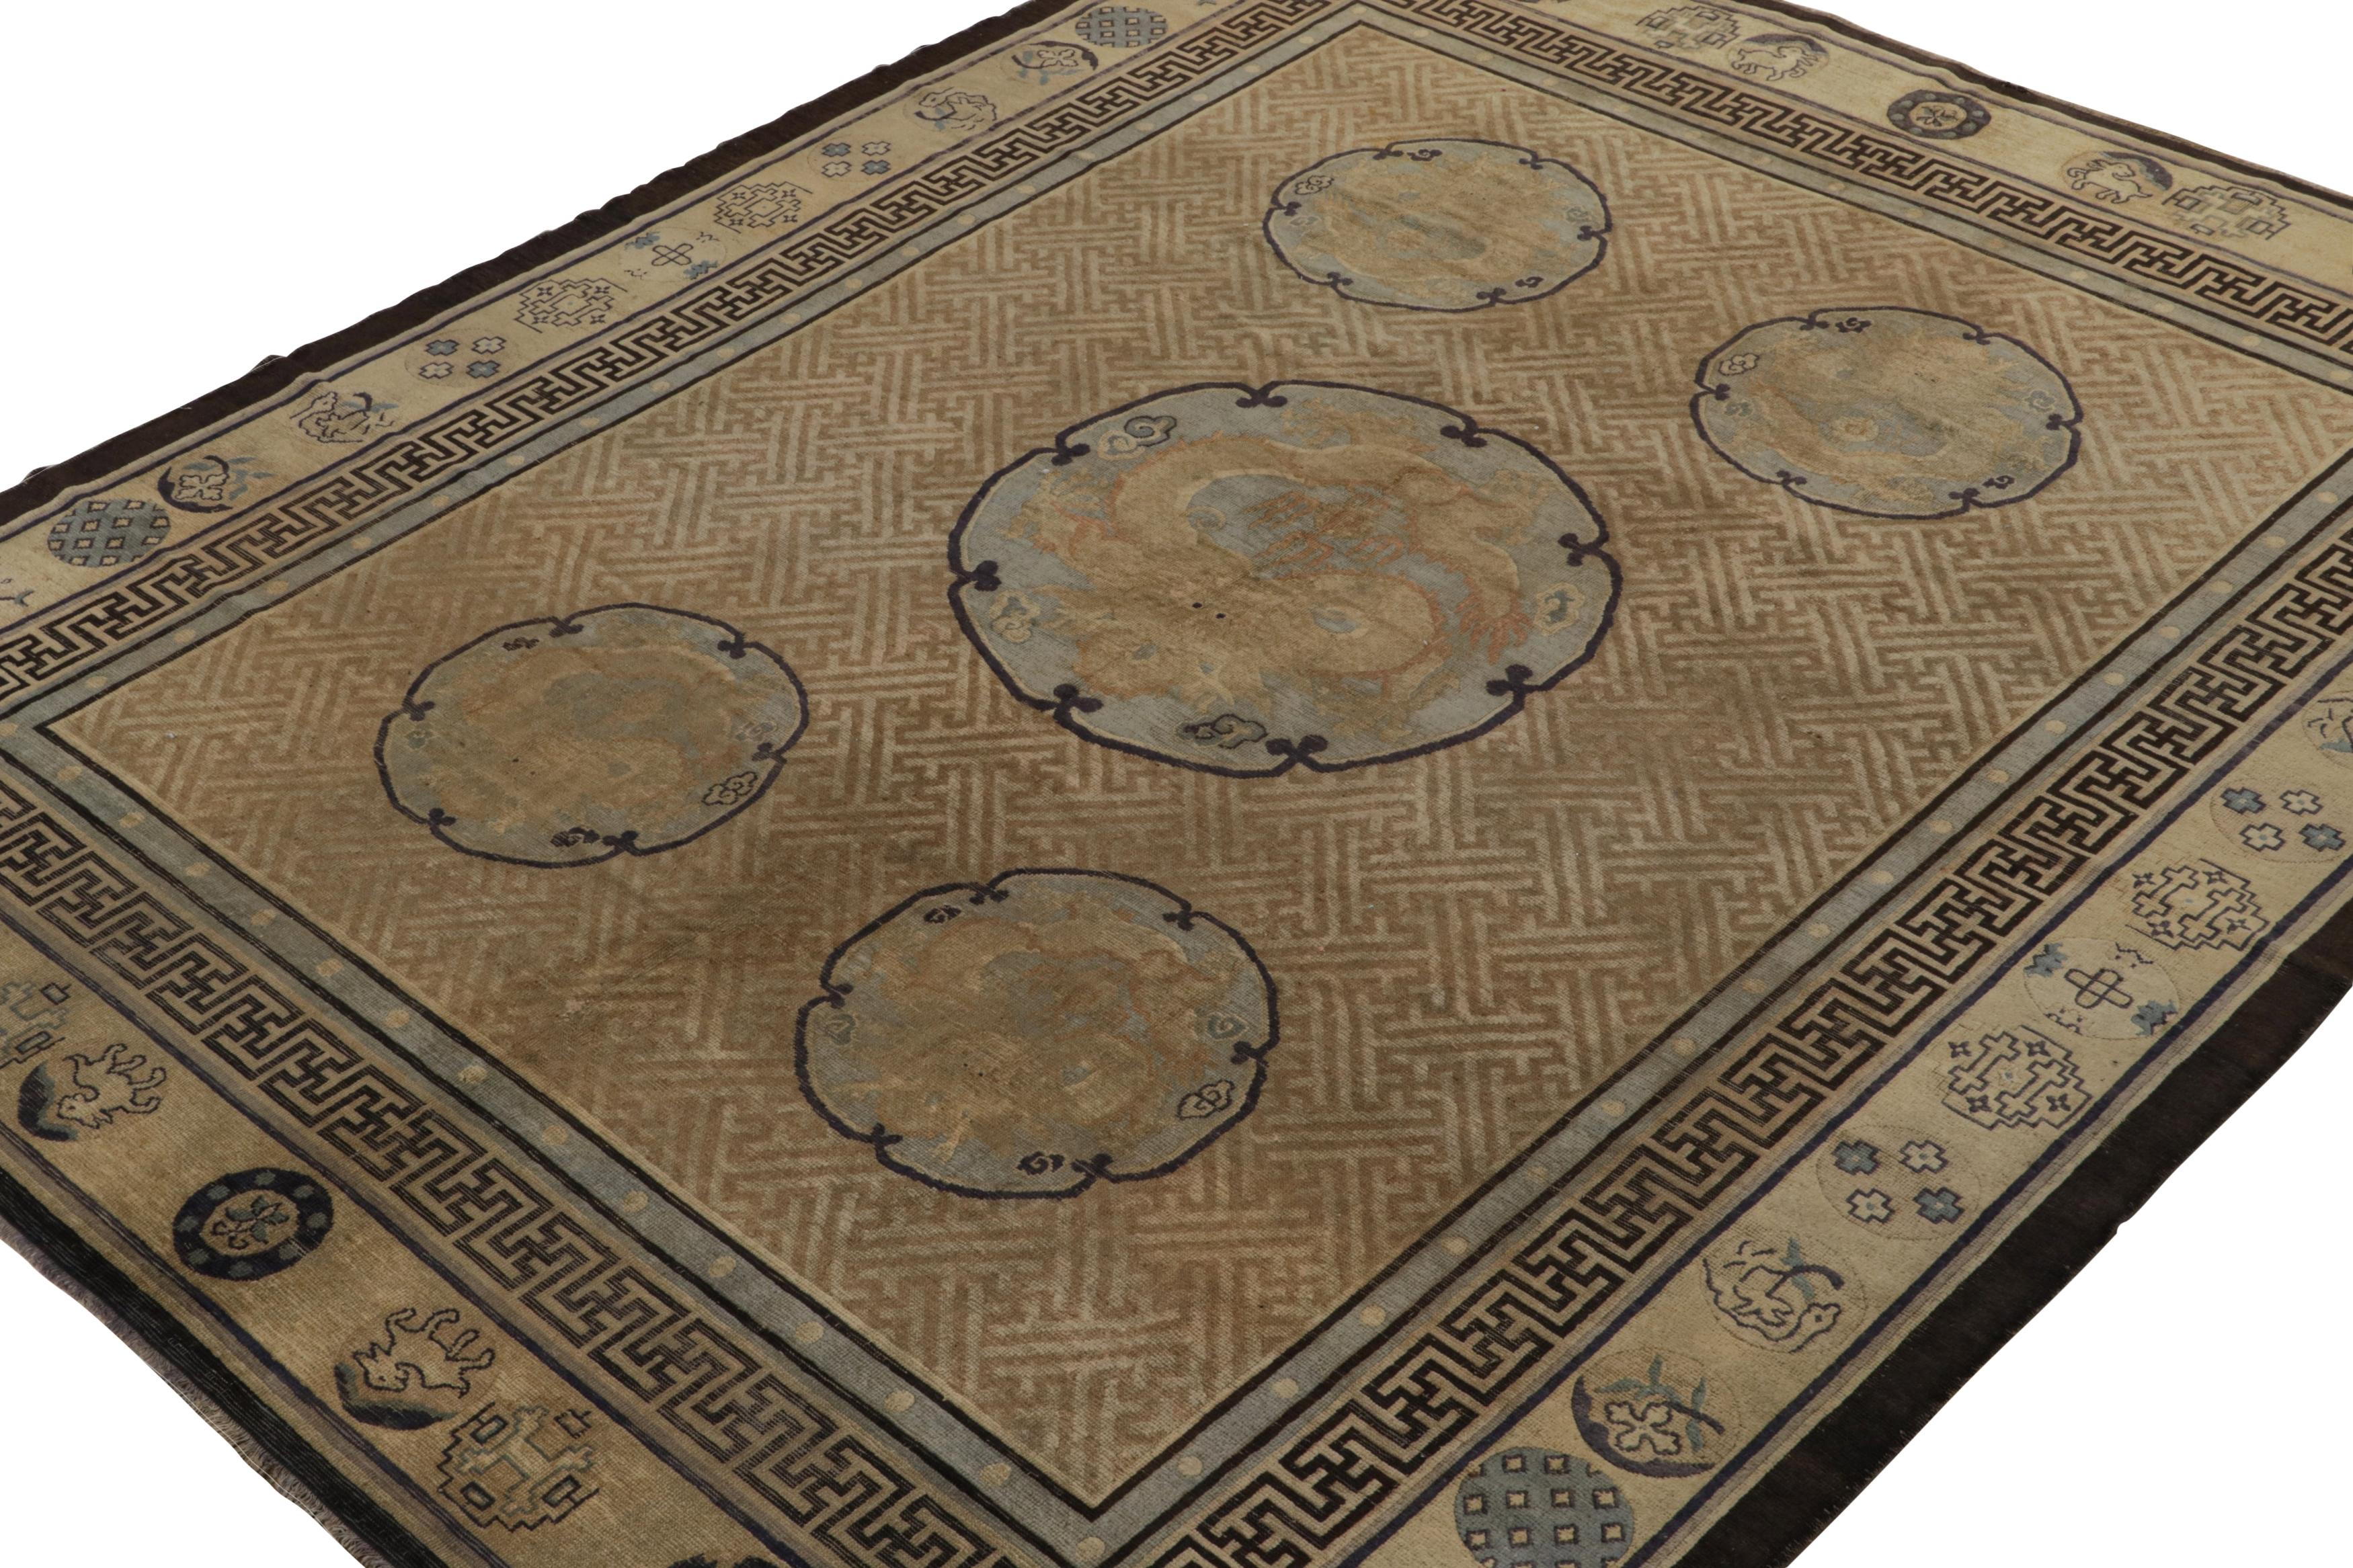 Noué à la main en laine vers 1890-1900, ce tapis chinois ancien de 8x9 est une pièce exceptionnellement rare de la Collection Rug & Kilim. 

Josh Nazmiyal, directeur de R&K, pense que cette pièce pourrait provenir de la région située entre la Chine